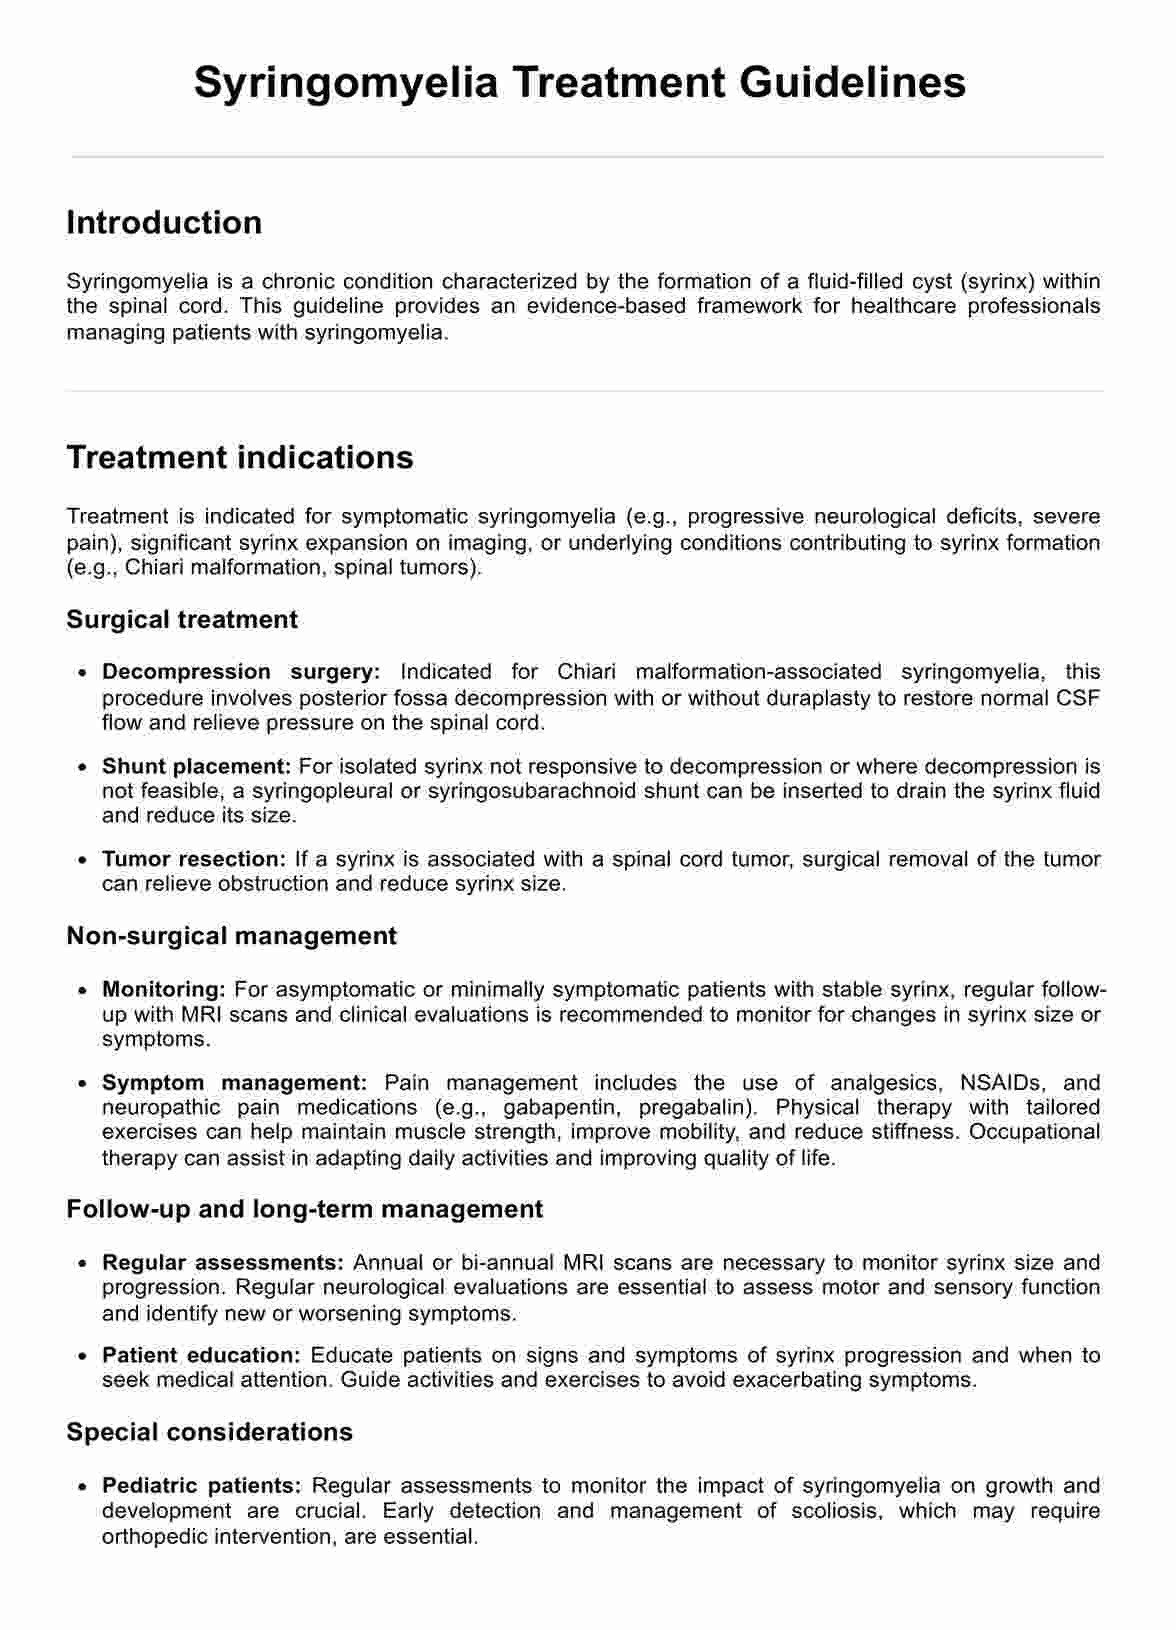 Syringomyelia Treatment Guidelines PDF Example